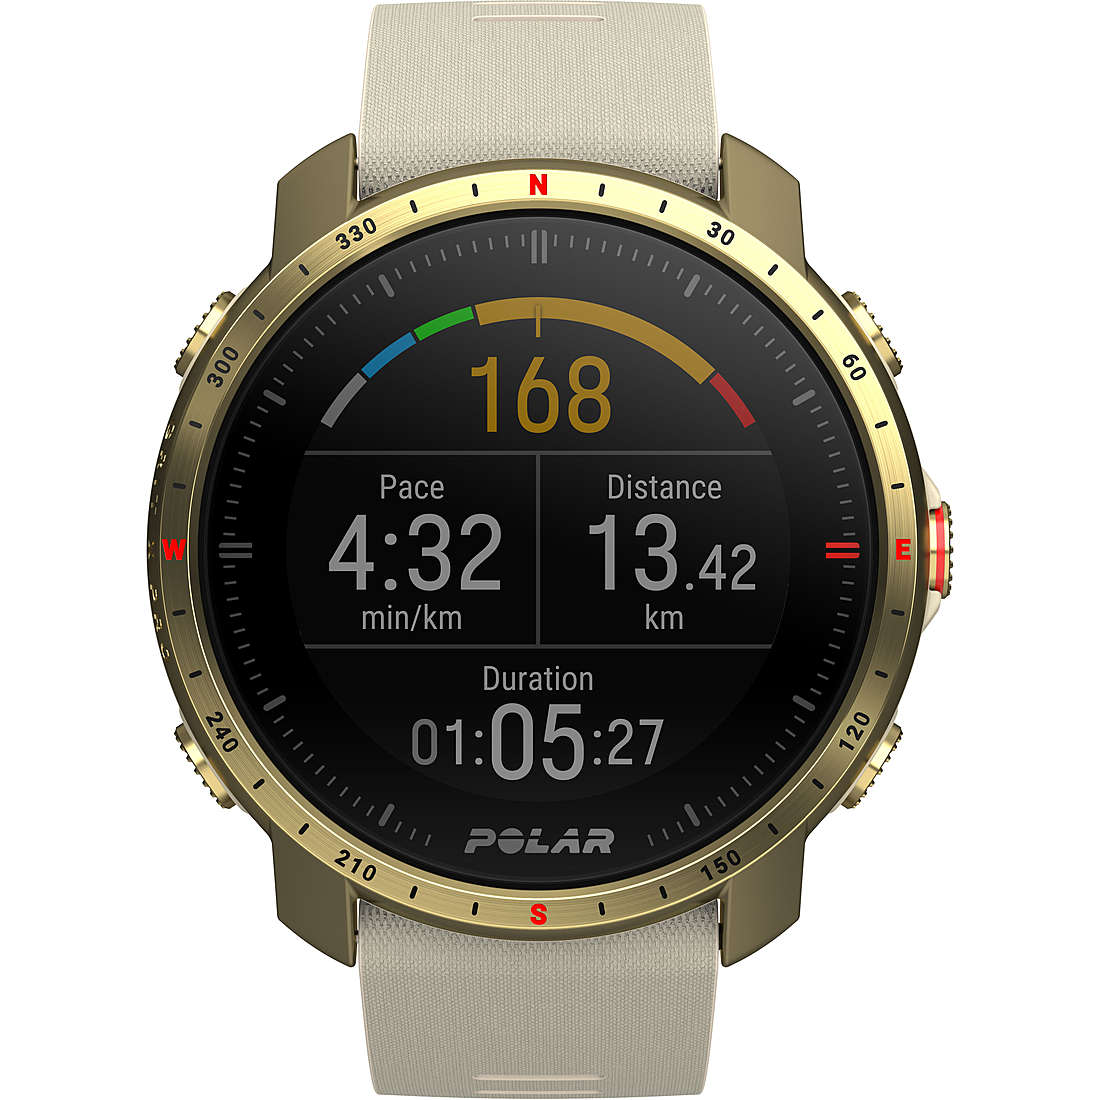 montre Smartwatch homme Polar Grit X Pro 90085776